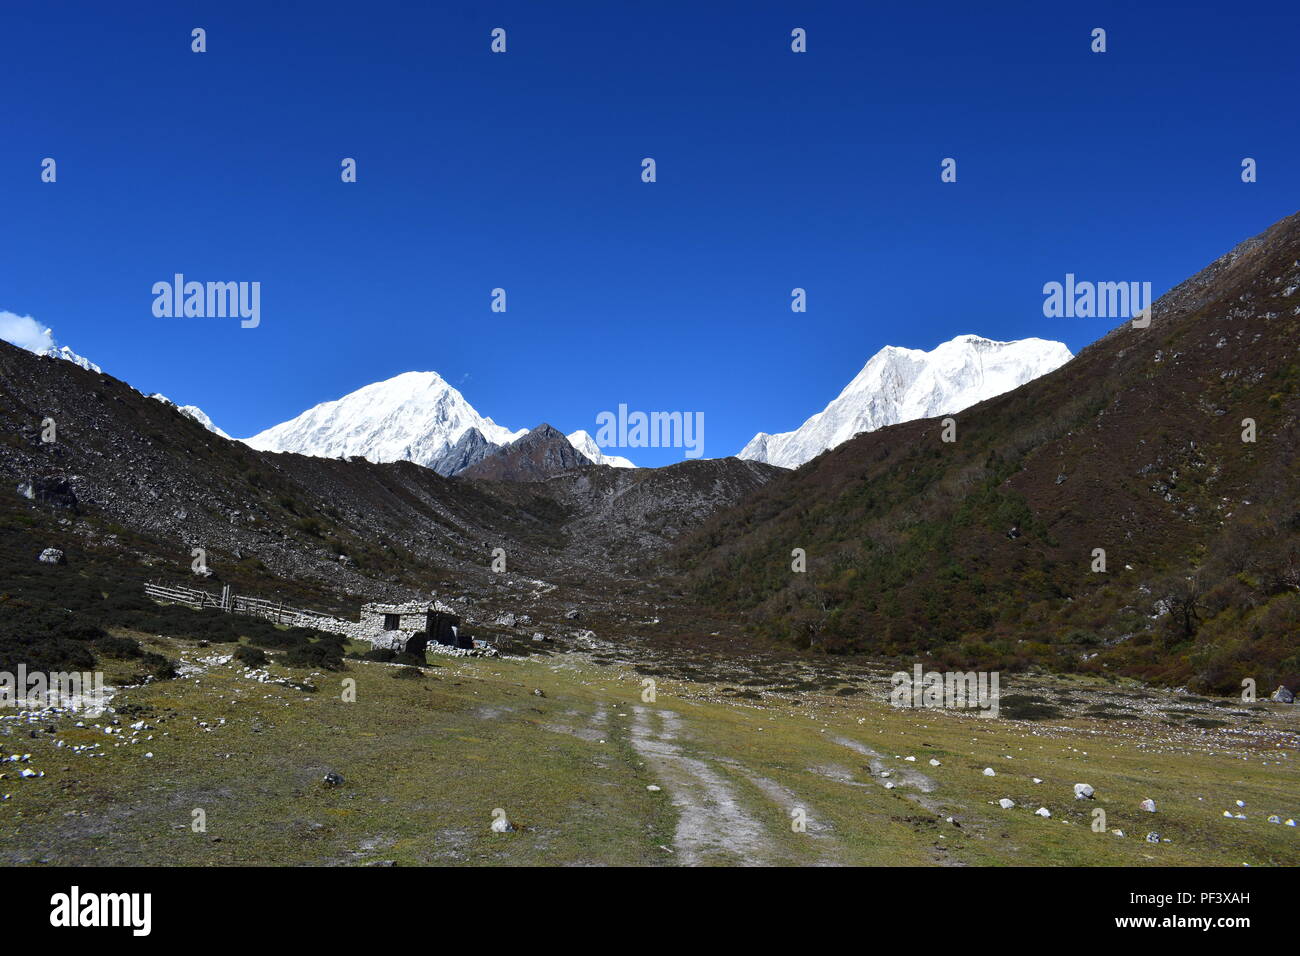 Trekking in Manaslu Circuit, Nepal Stock Photo